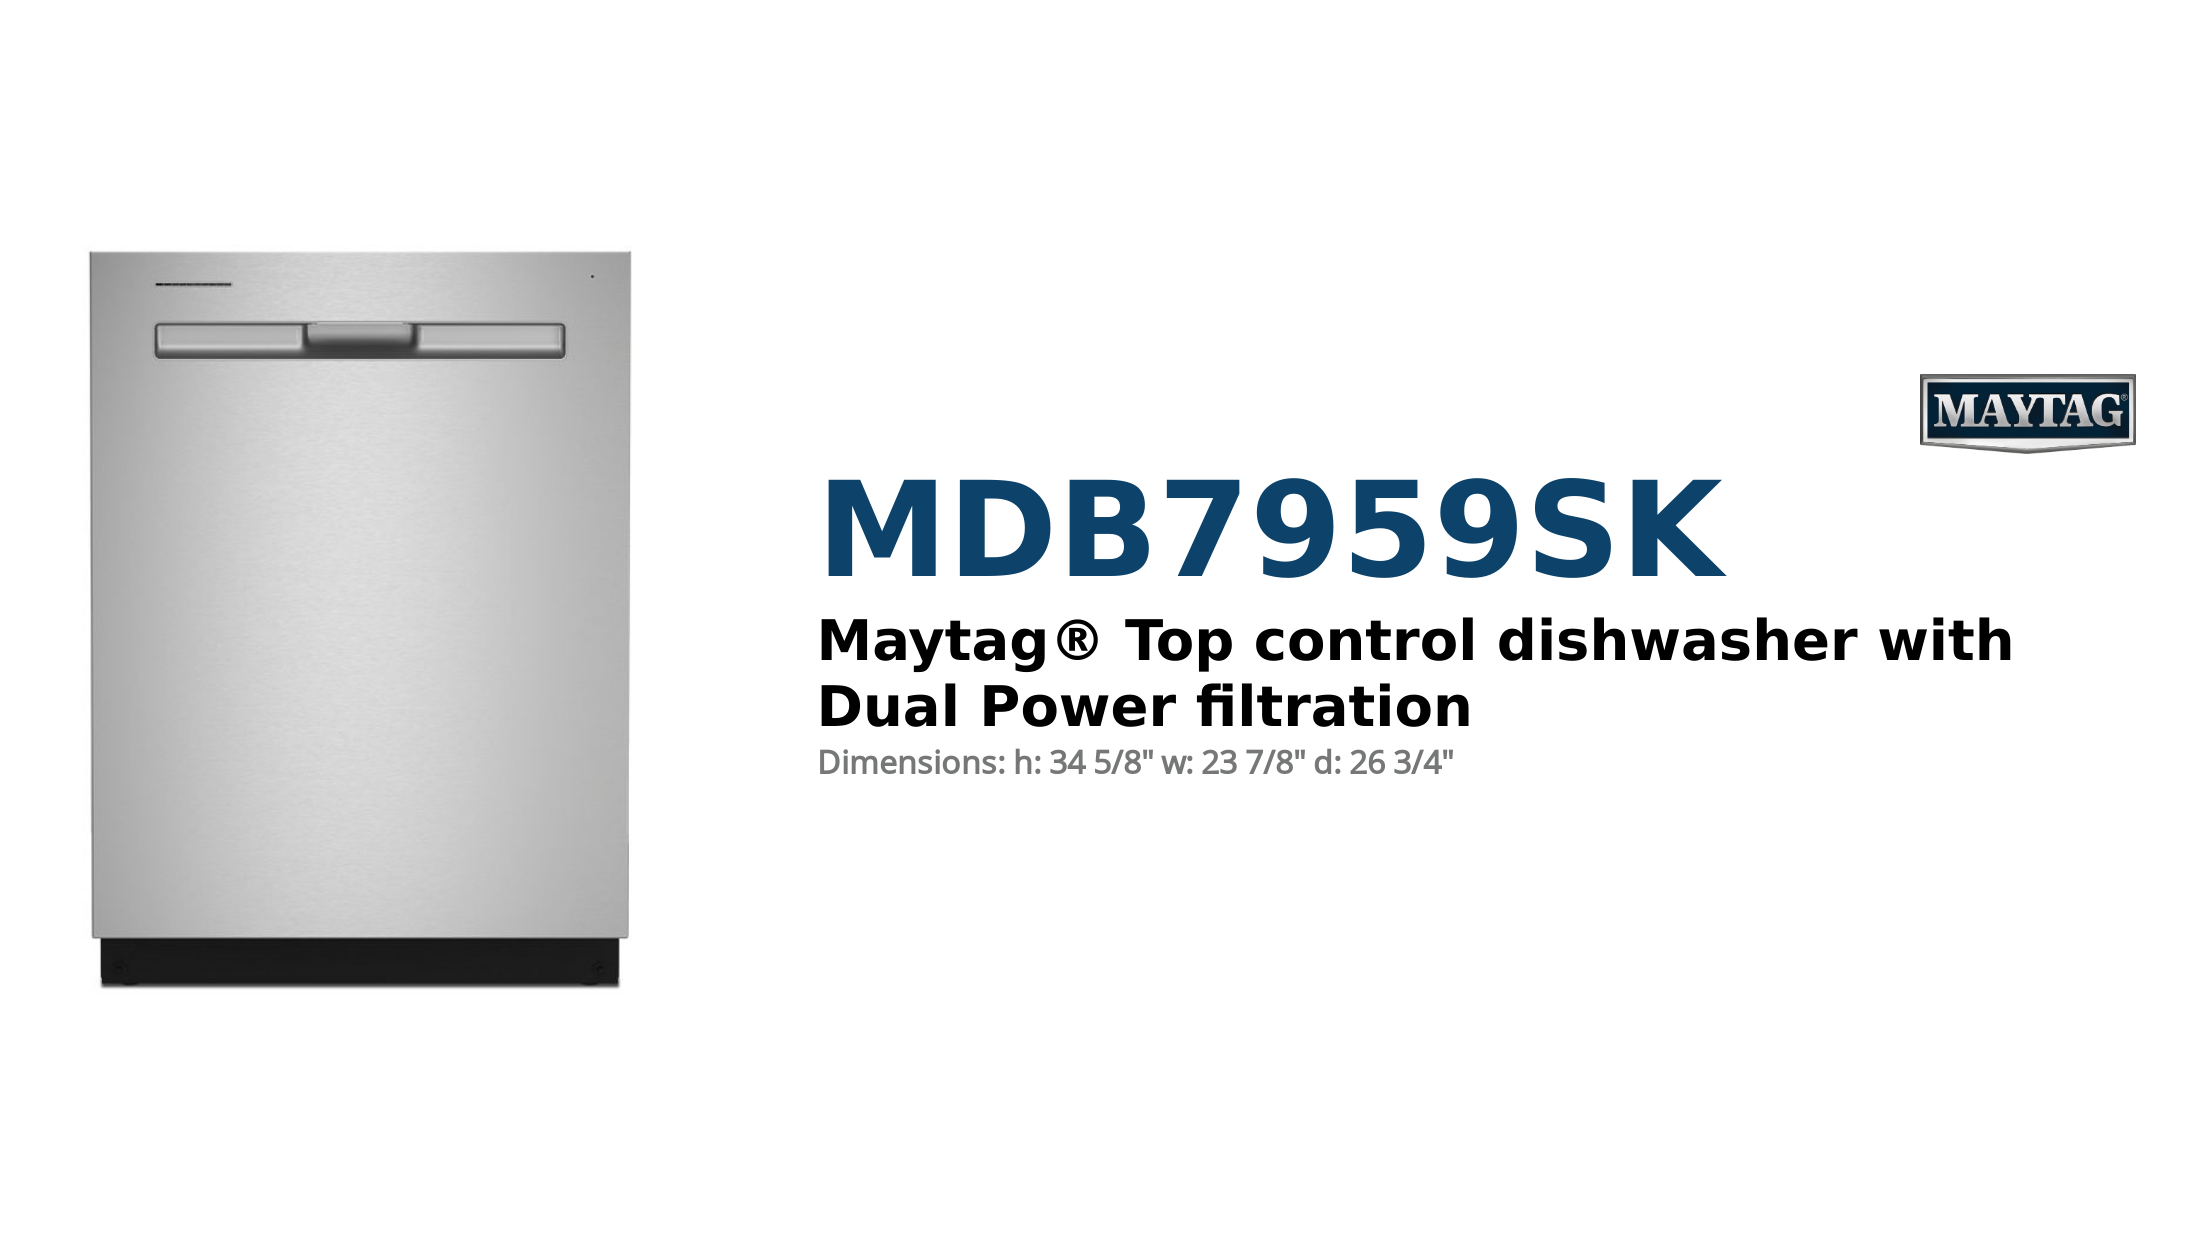 Product Brief: Maytag Dishwasher - MDB7959SK